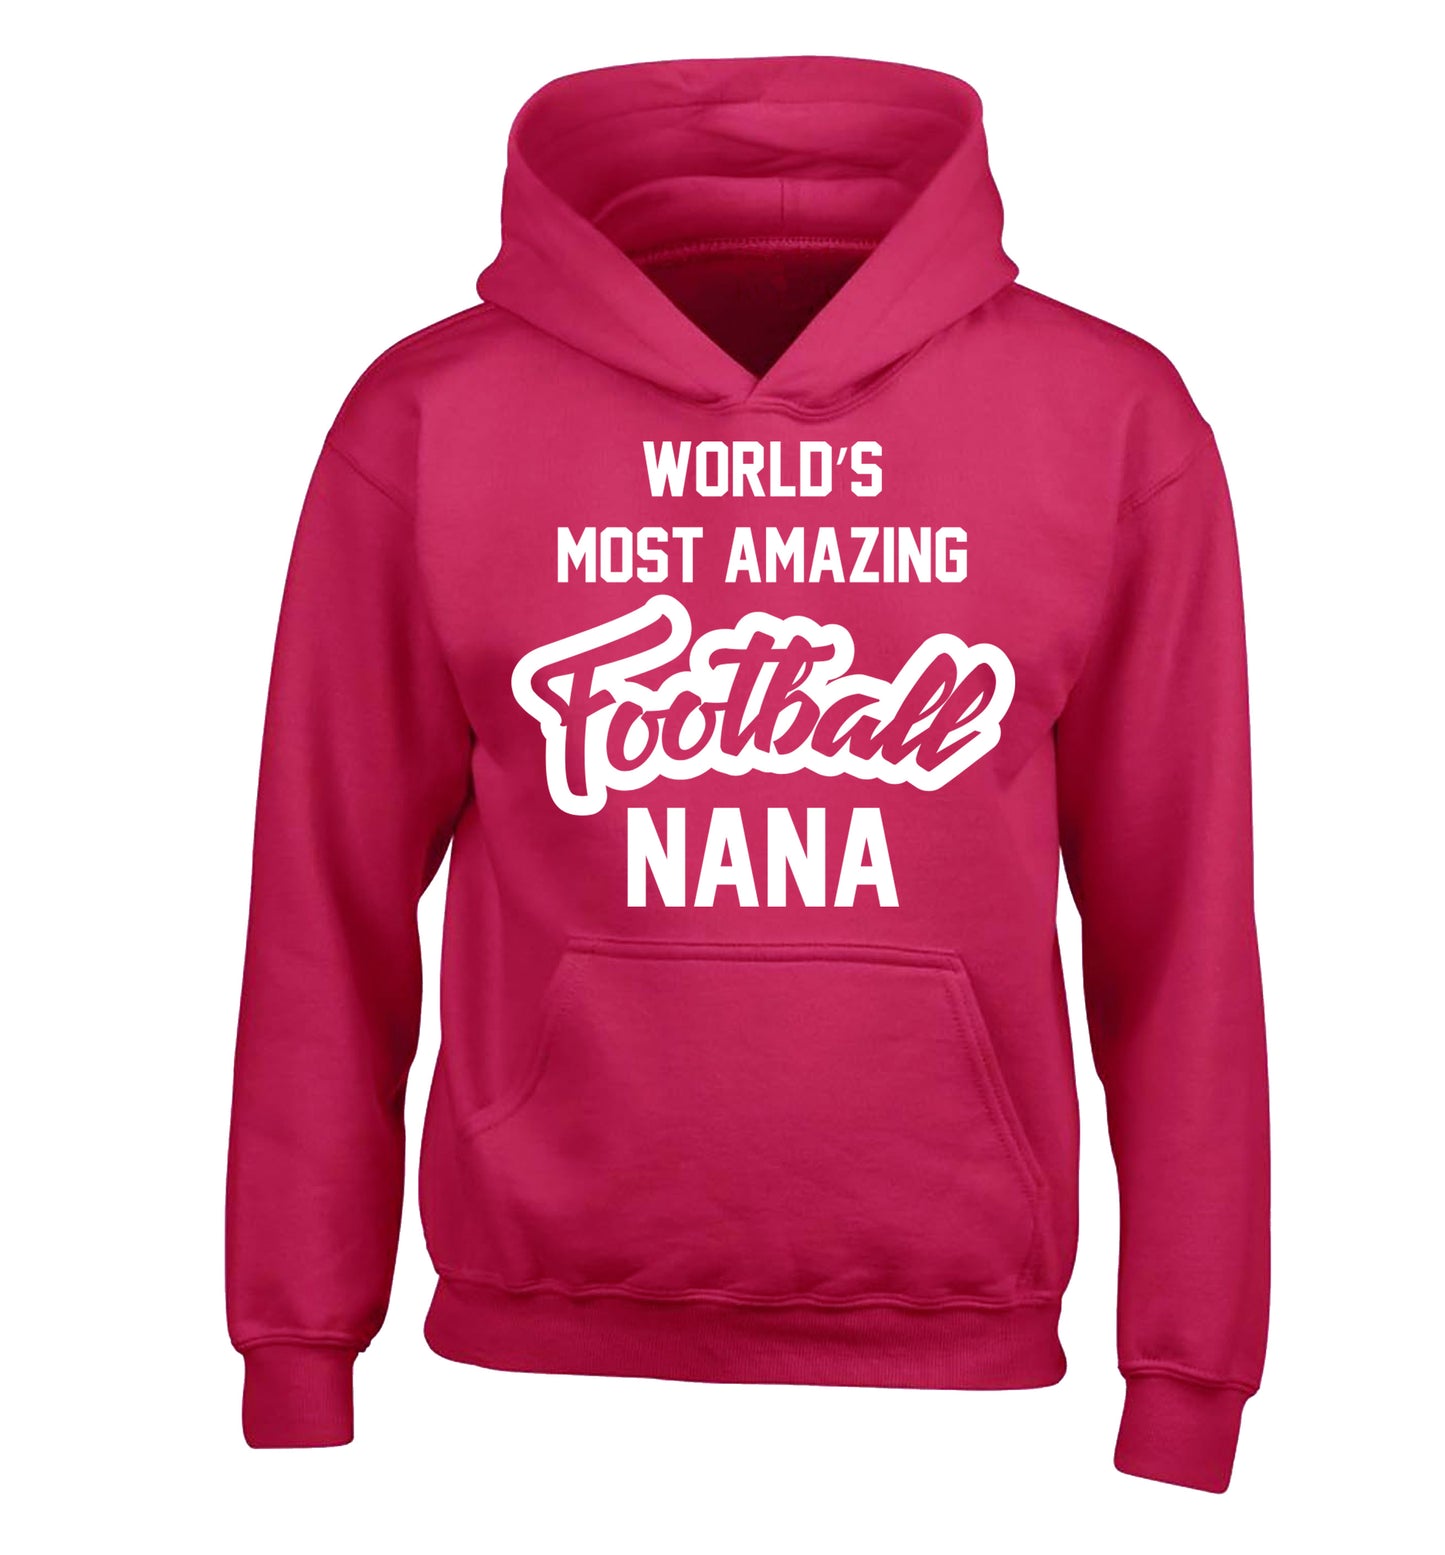 Worlds most amazing football nana children's pink hoodie 12-14 Years